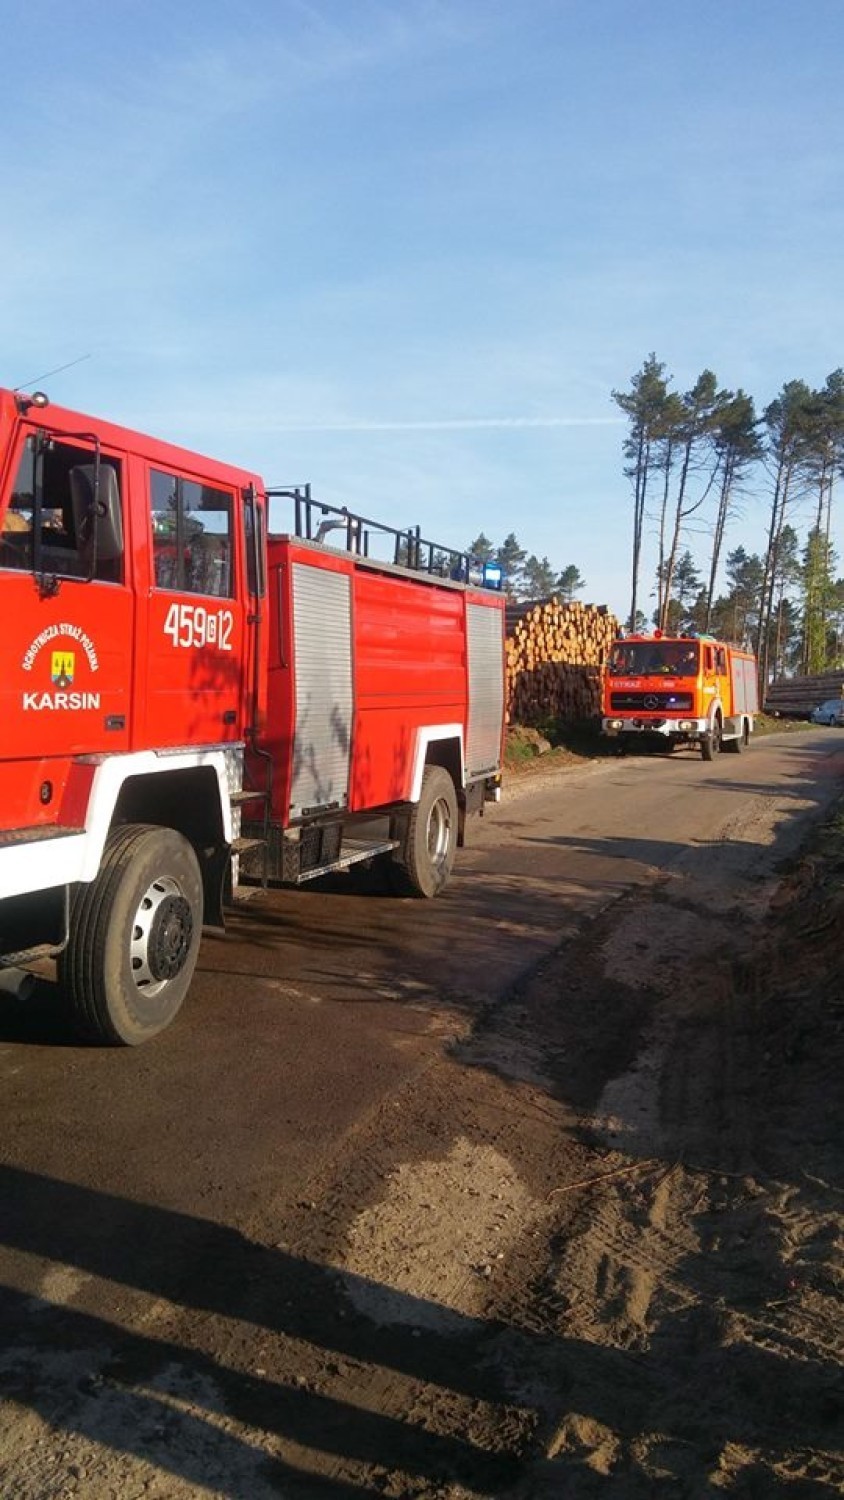 58 strażaków walczyło z pożarem w gminie Dziemiany. Wszystko wskazuje na to, że doszło do podpalenia [ZDJĘCIA]